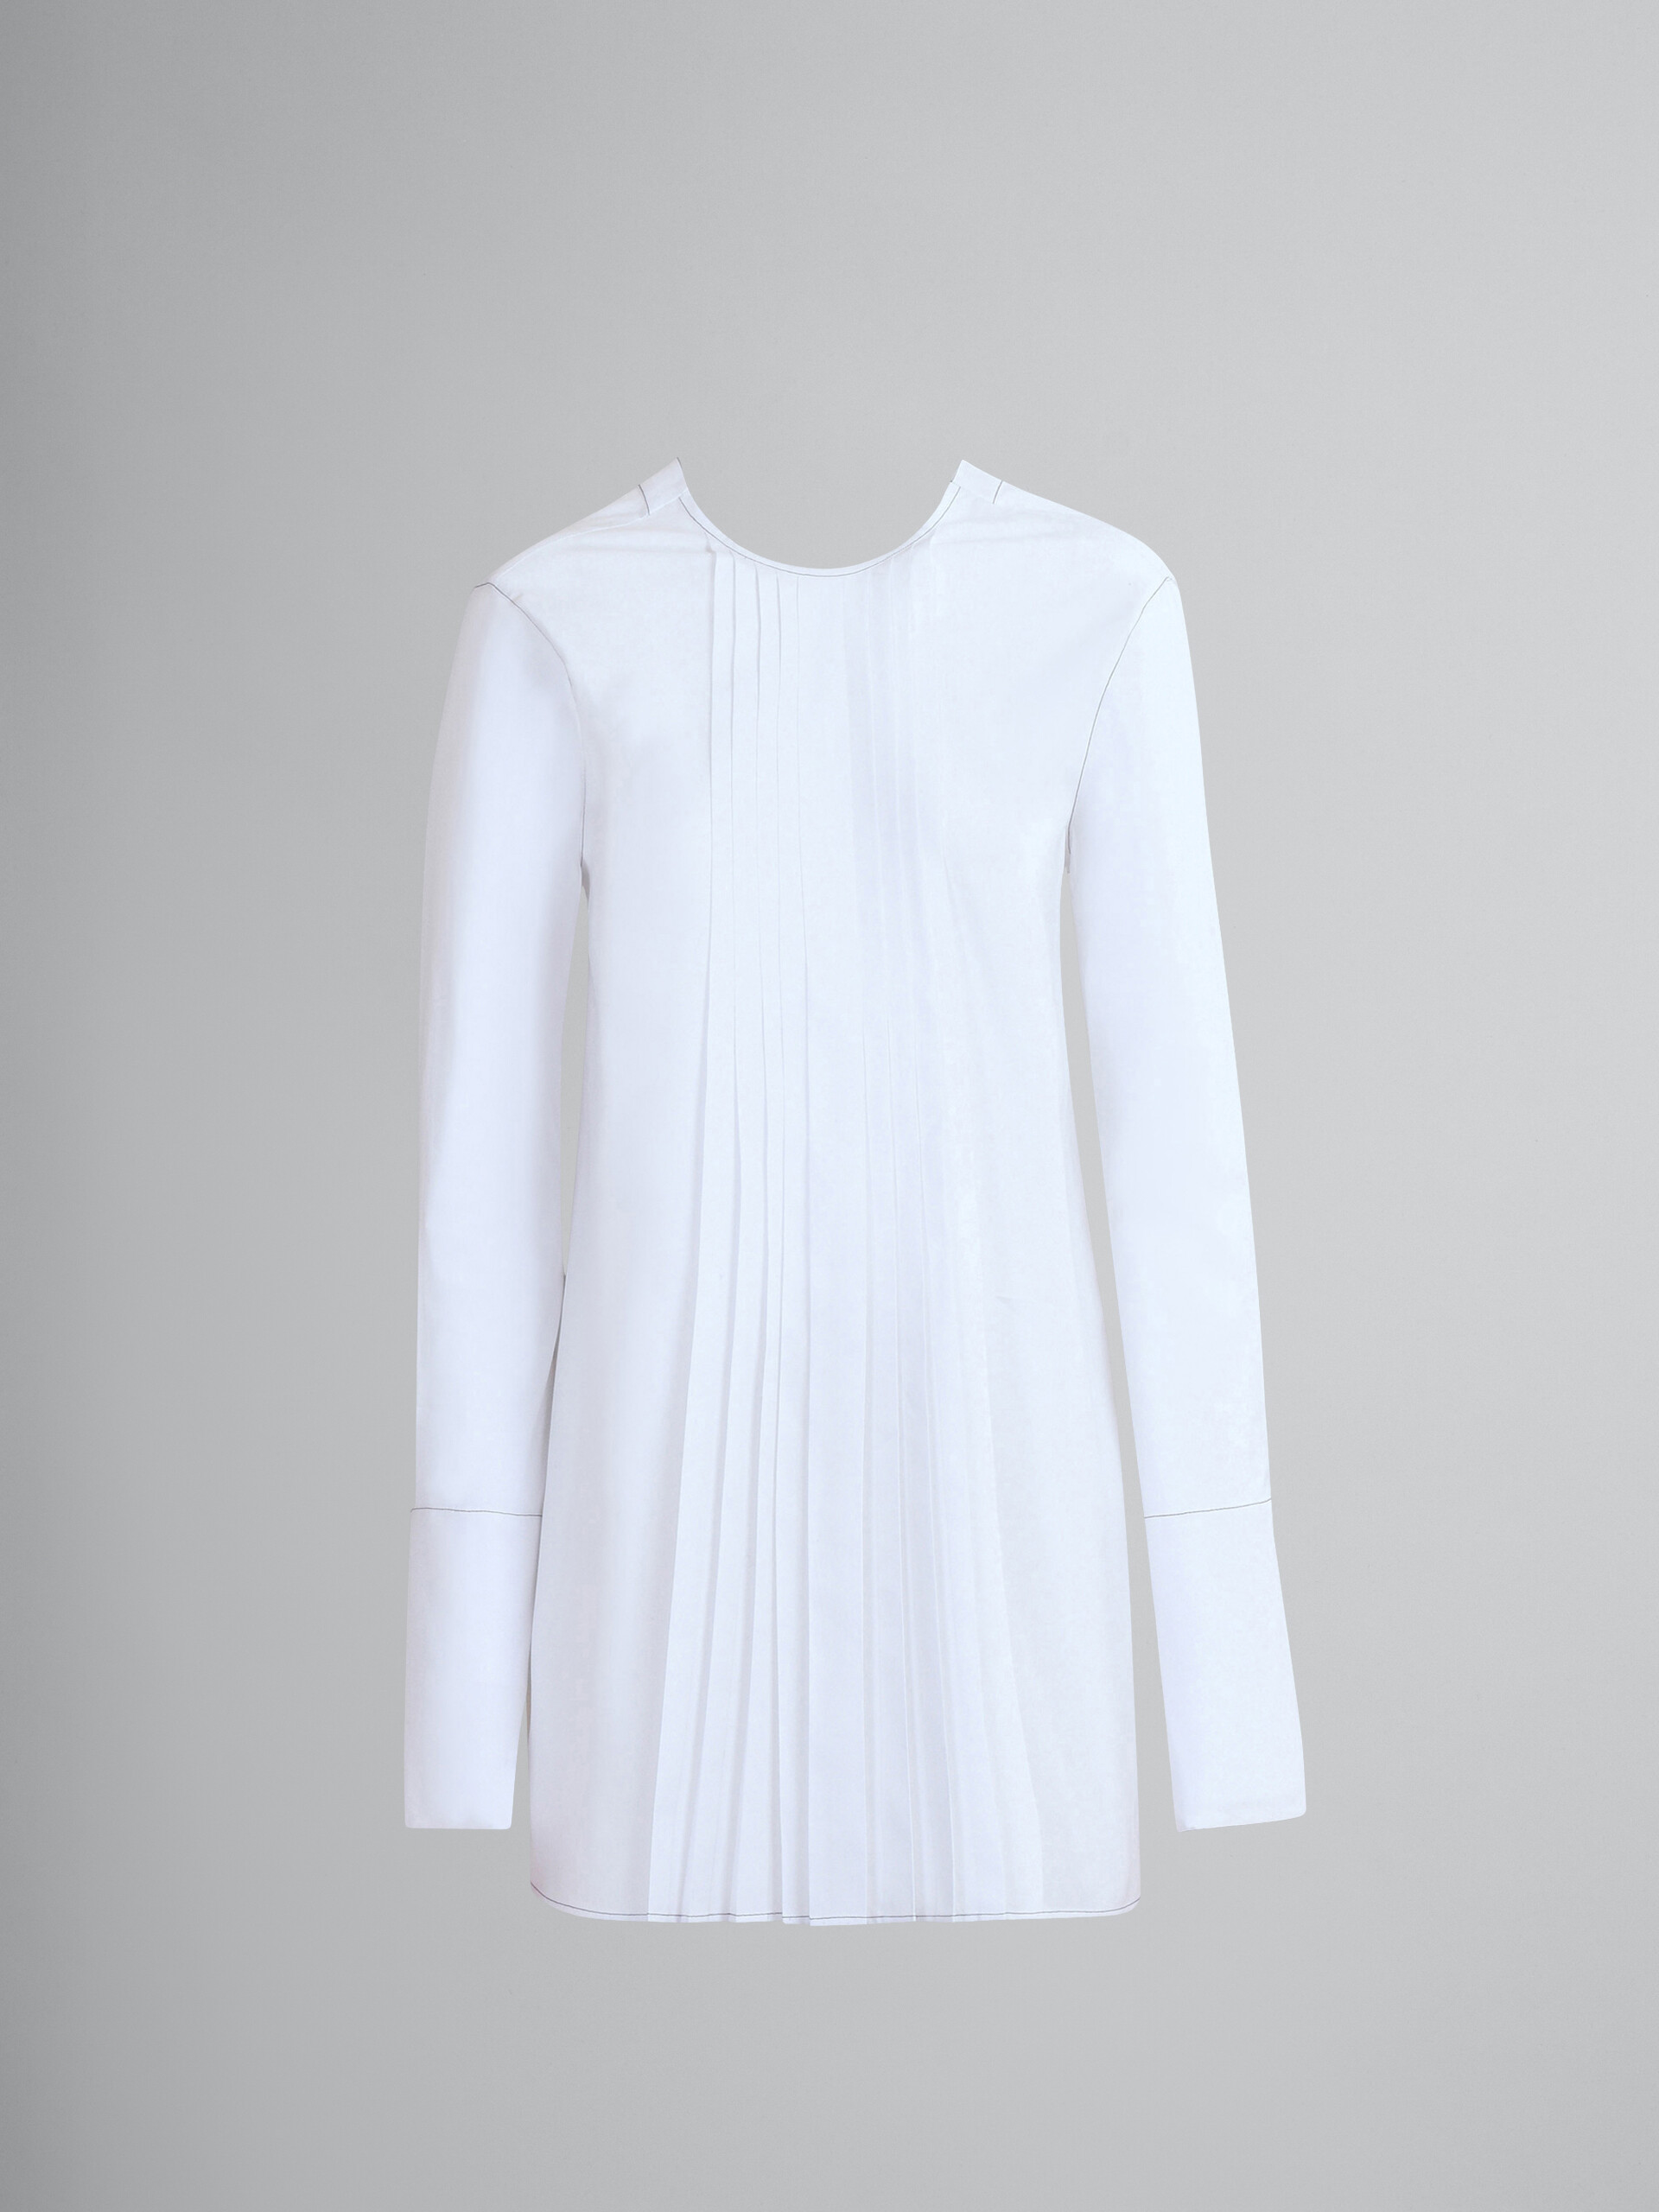 Camicia girocollo in popeline bianco - Camicie - Image 1